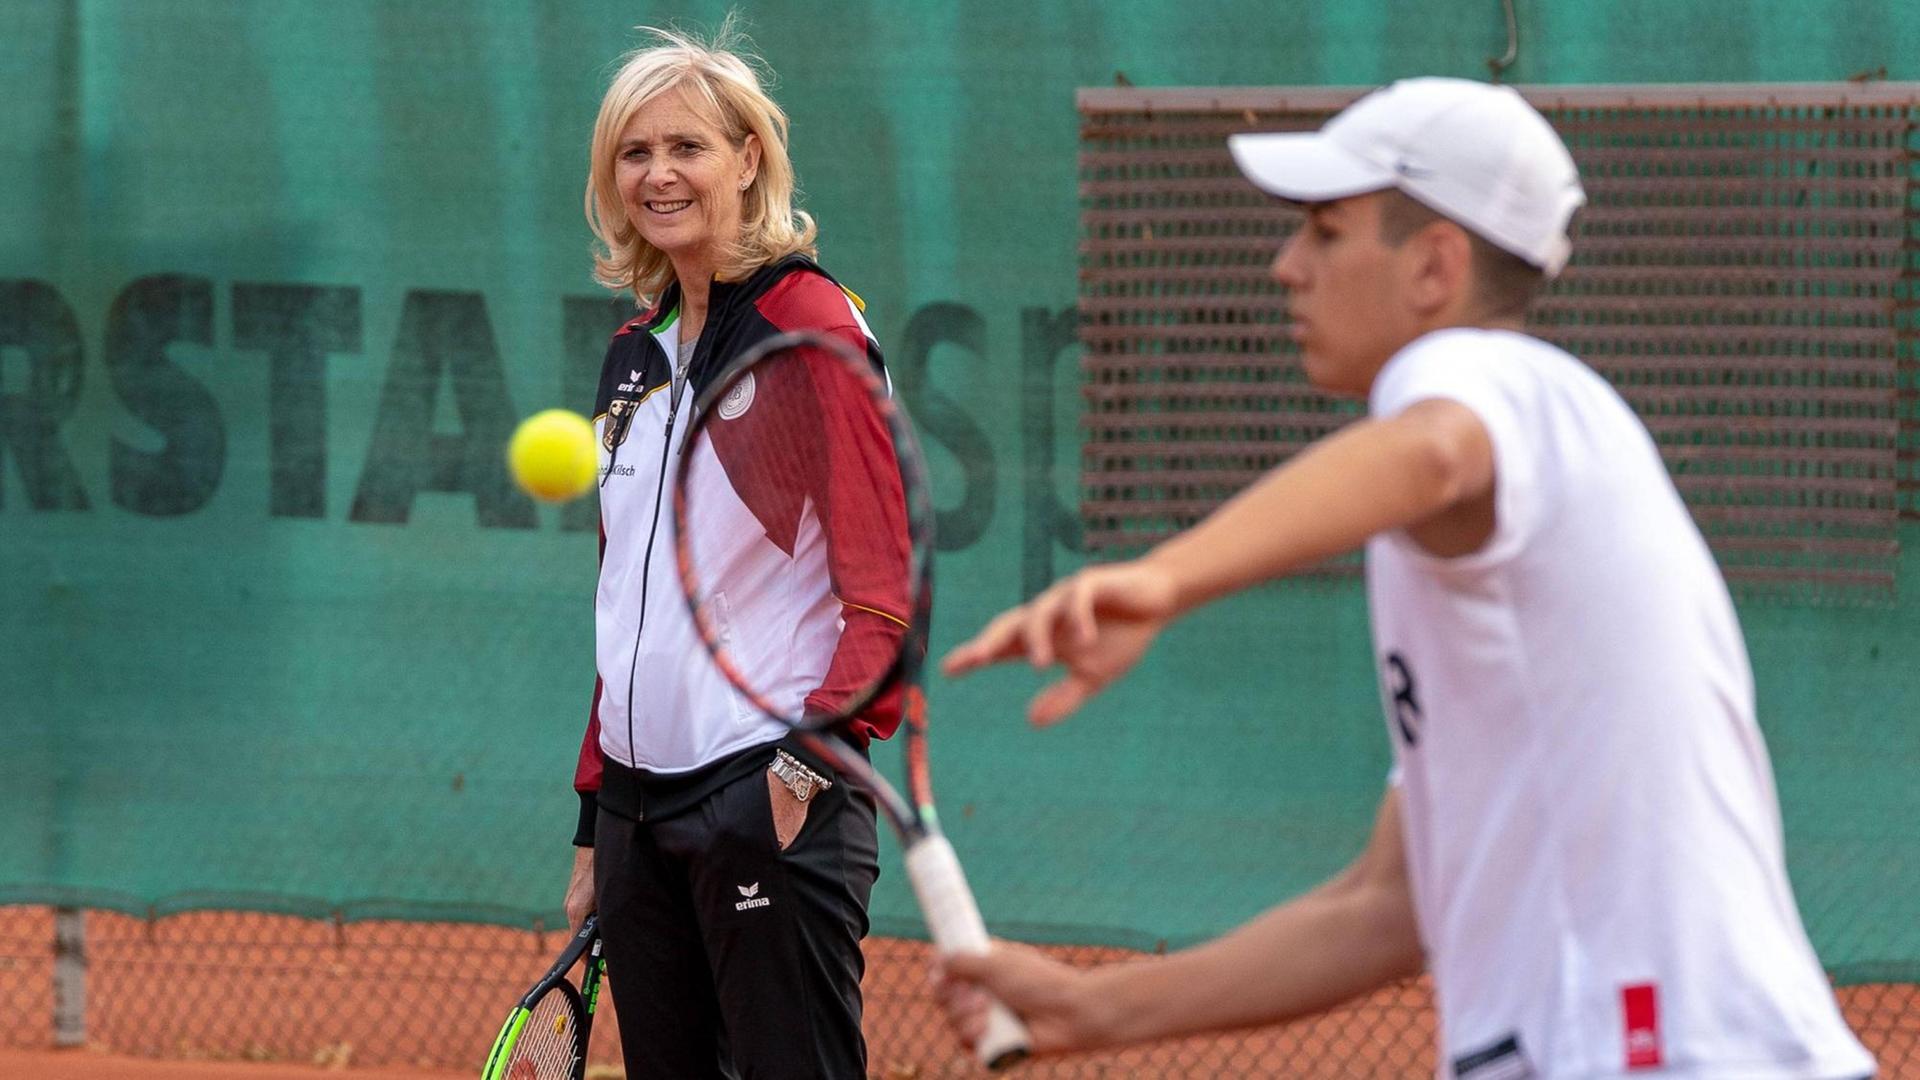 Die ehemalige Tennisspielerin Claudia Kohde-Kilsch bei der Sichtung von Nachwuchsspielern im Auftrag des DTB beim TC Sandanger in Halle am 23.06.18.